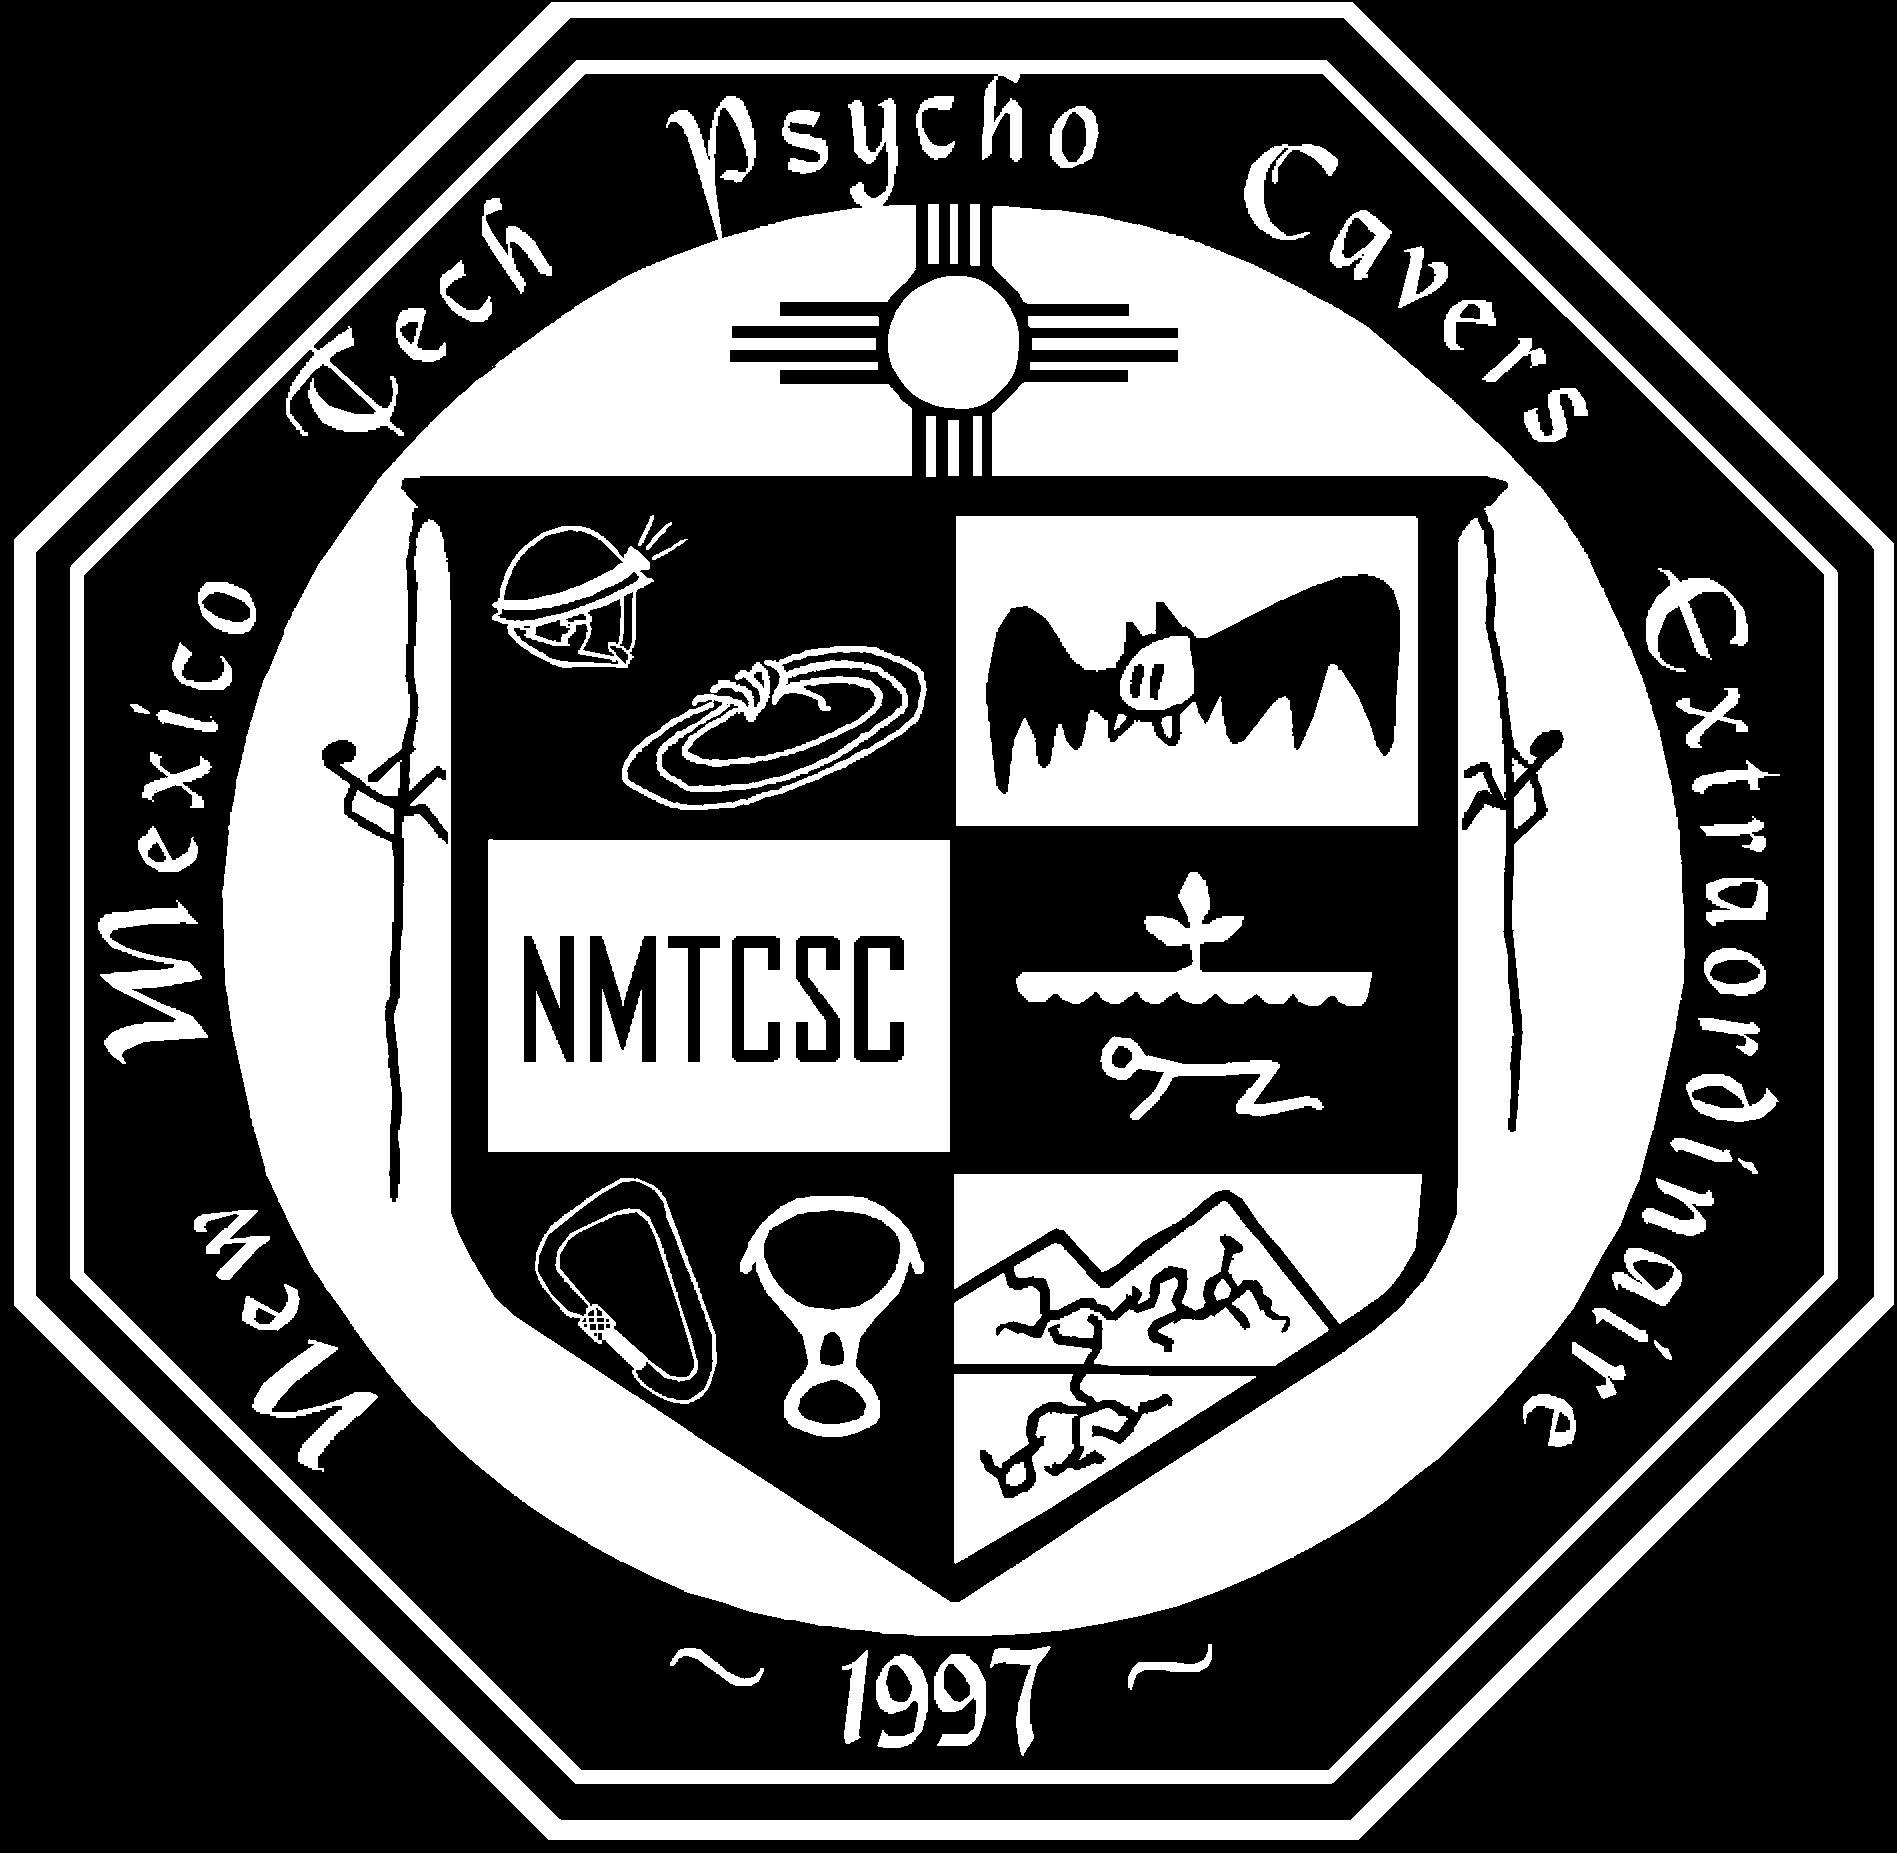 NMT Caving Club logo